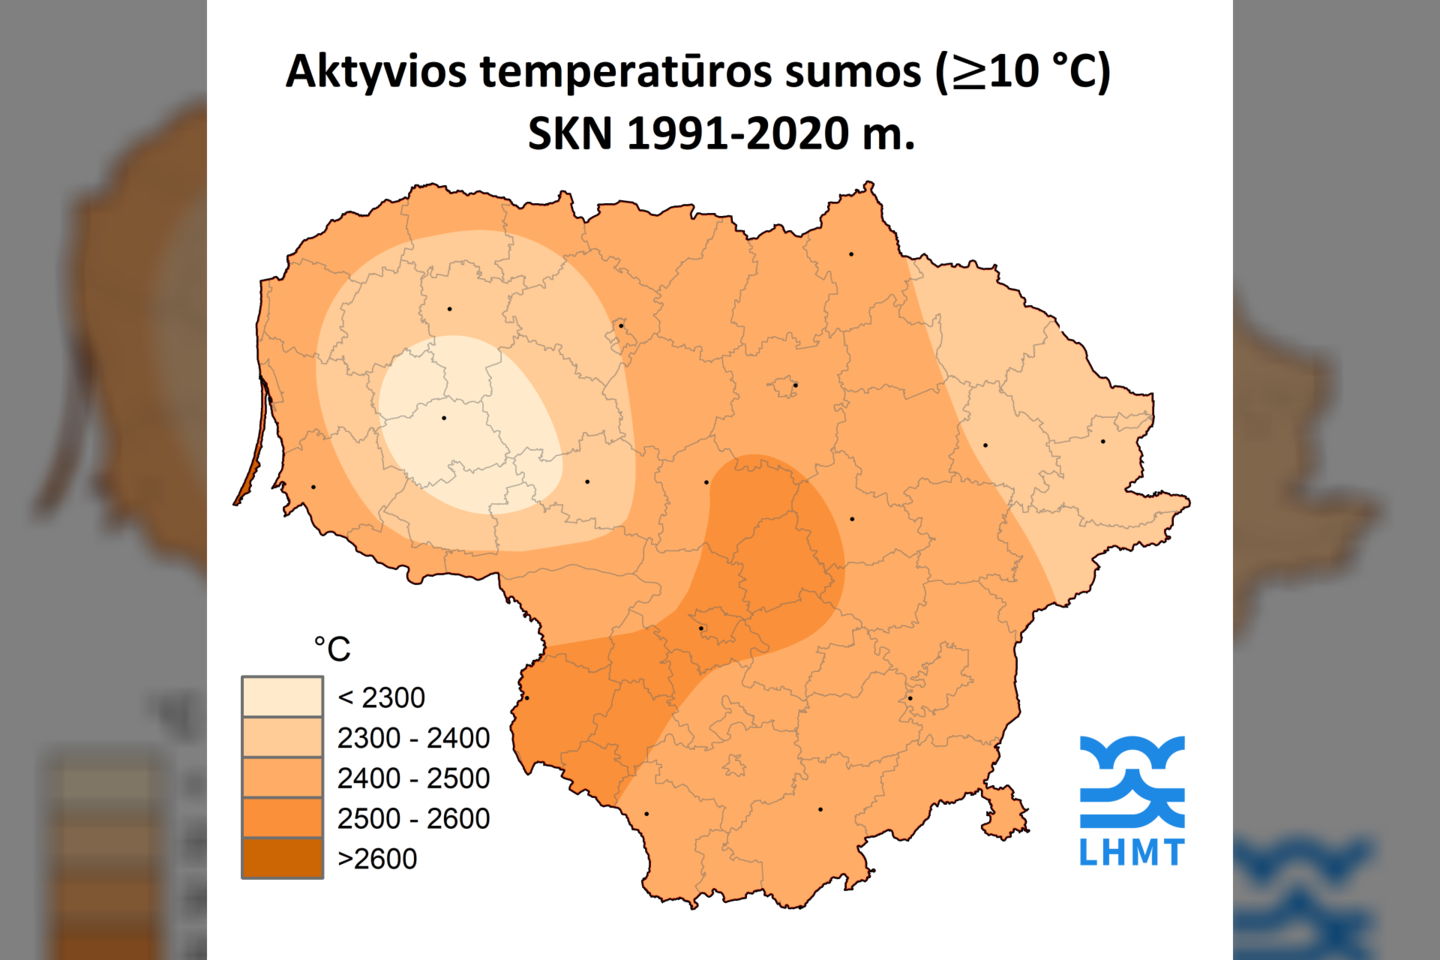  Klimato kaita atneš ne tik iššūkius, bet ir galimybes.<br>Lietuvos hidrometeorologijos tarnybos nuotr.